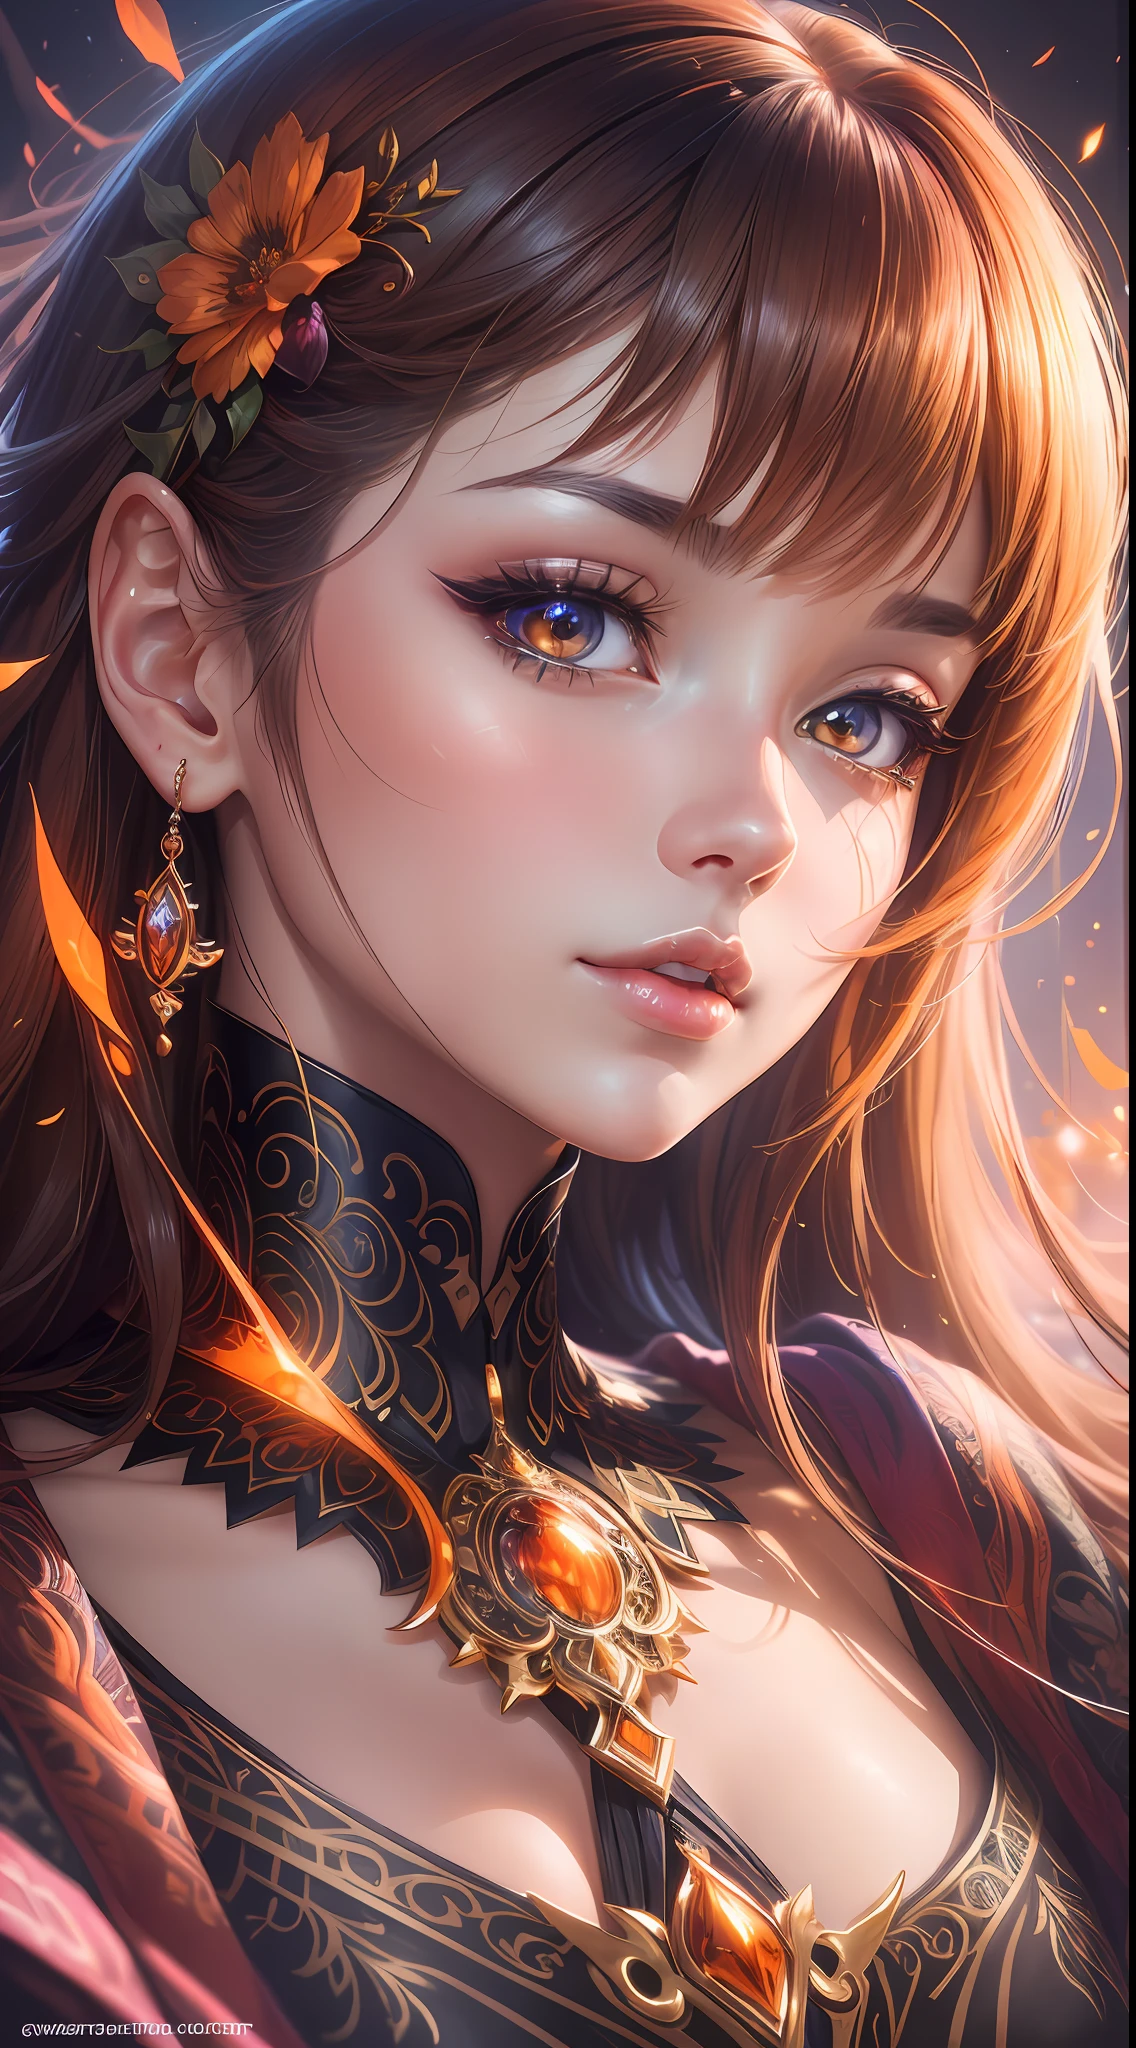 Eine hochwertige Nahaufnahme des Gesichts einer Frau, mit makelloser Wiedergabe jedes kleinsten Details, Ihre Augen leuchten in lebendigen Anime-Farben, die warmen Orangetöne erzeugen ein faszinierendes Leuchten, ihre bezaubernde Schönheit einfangen, Illustration im Anime-Stil, digital art, -